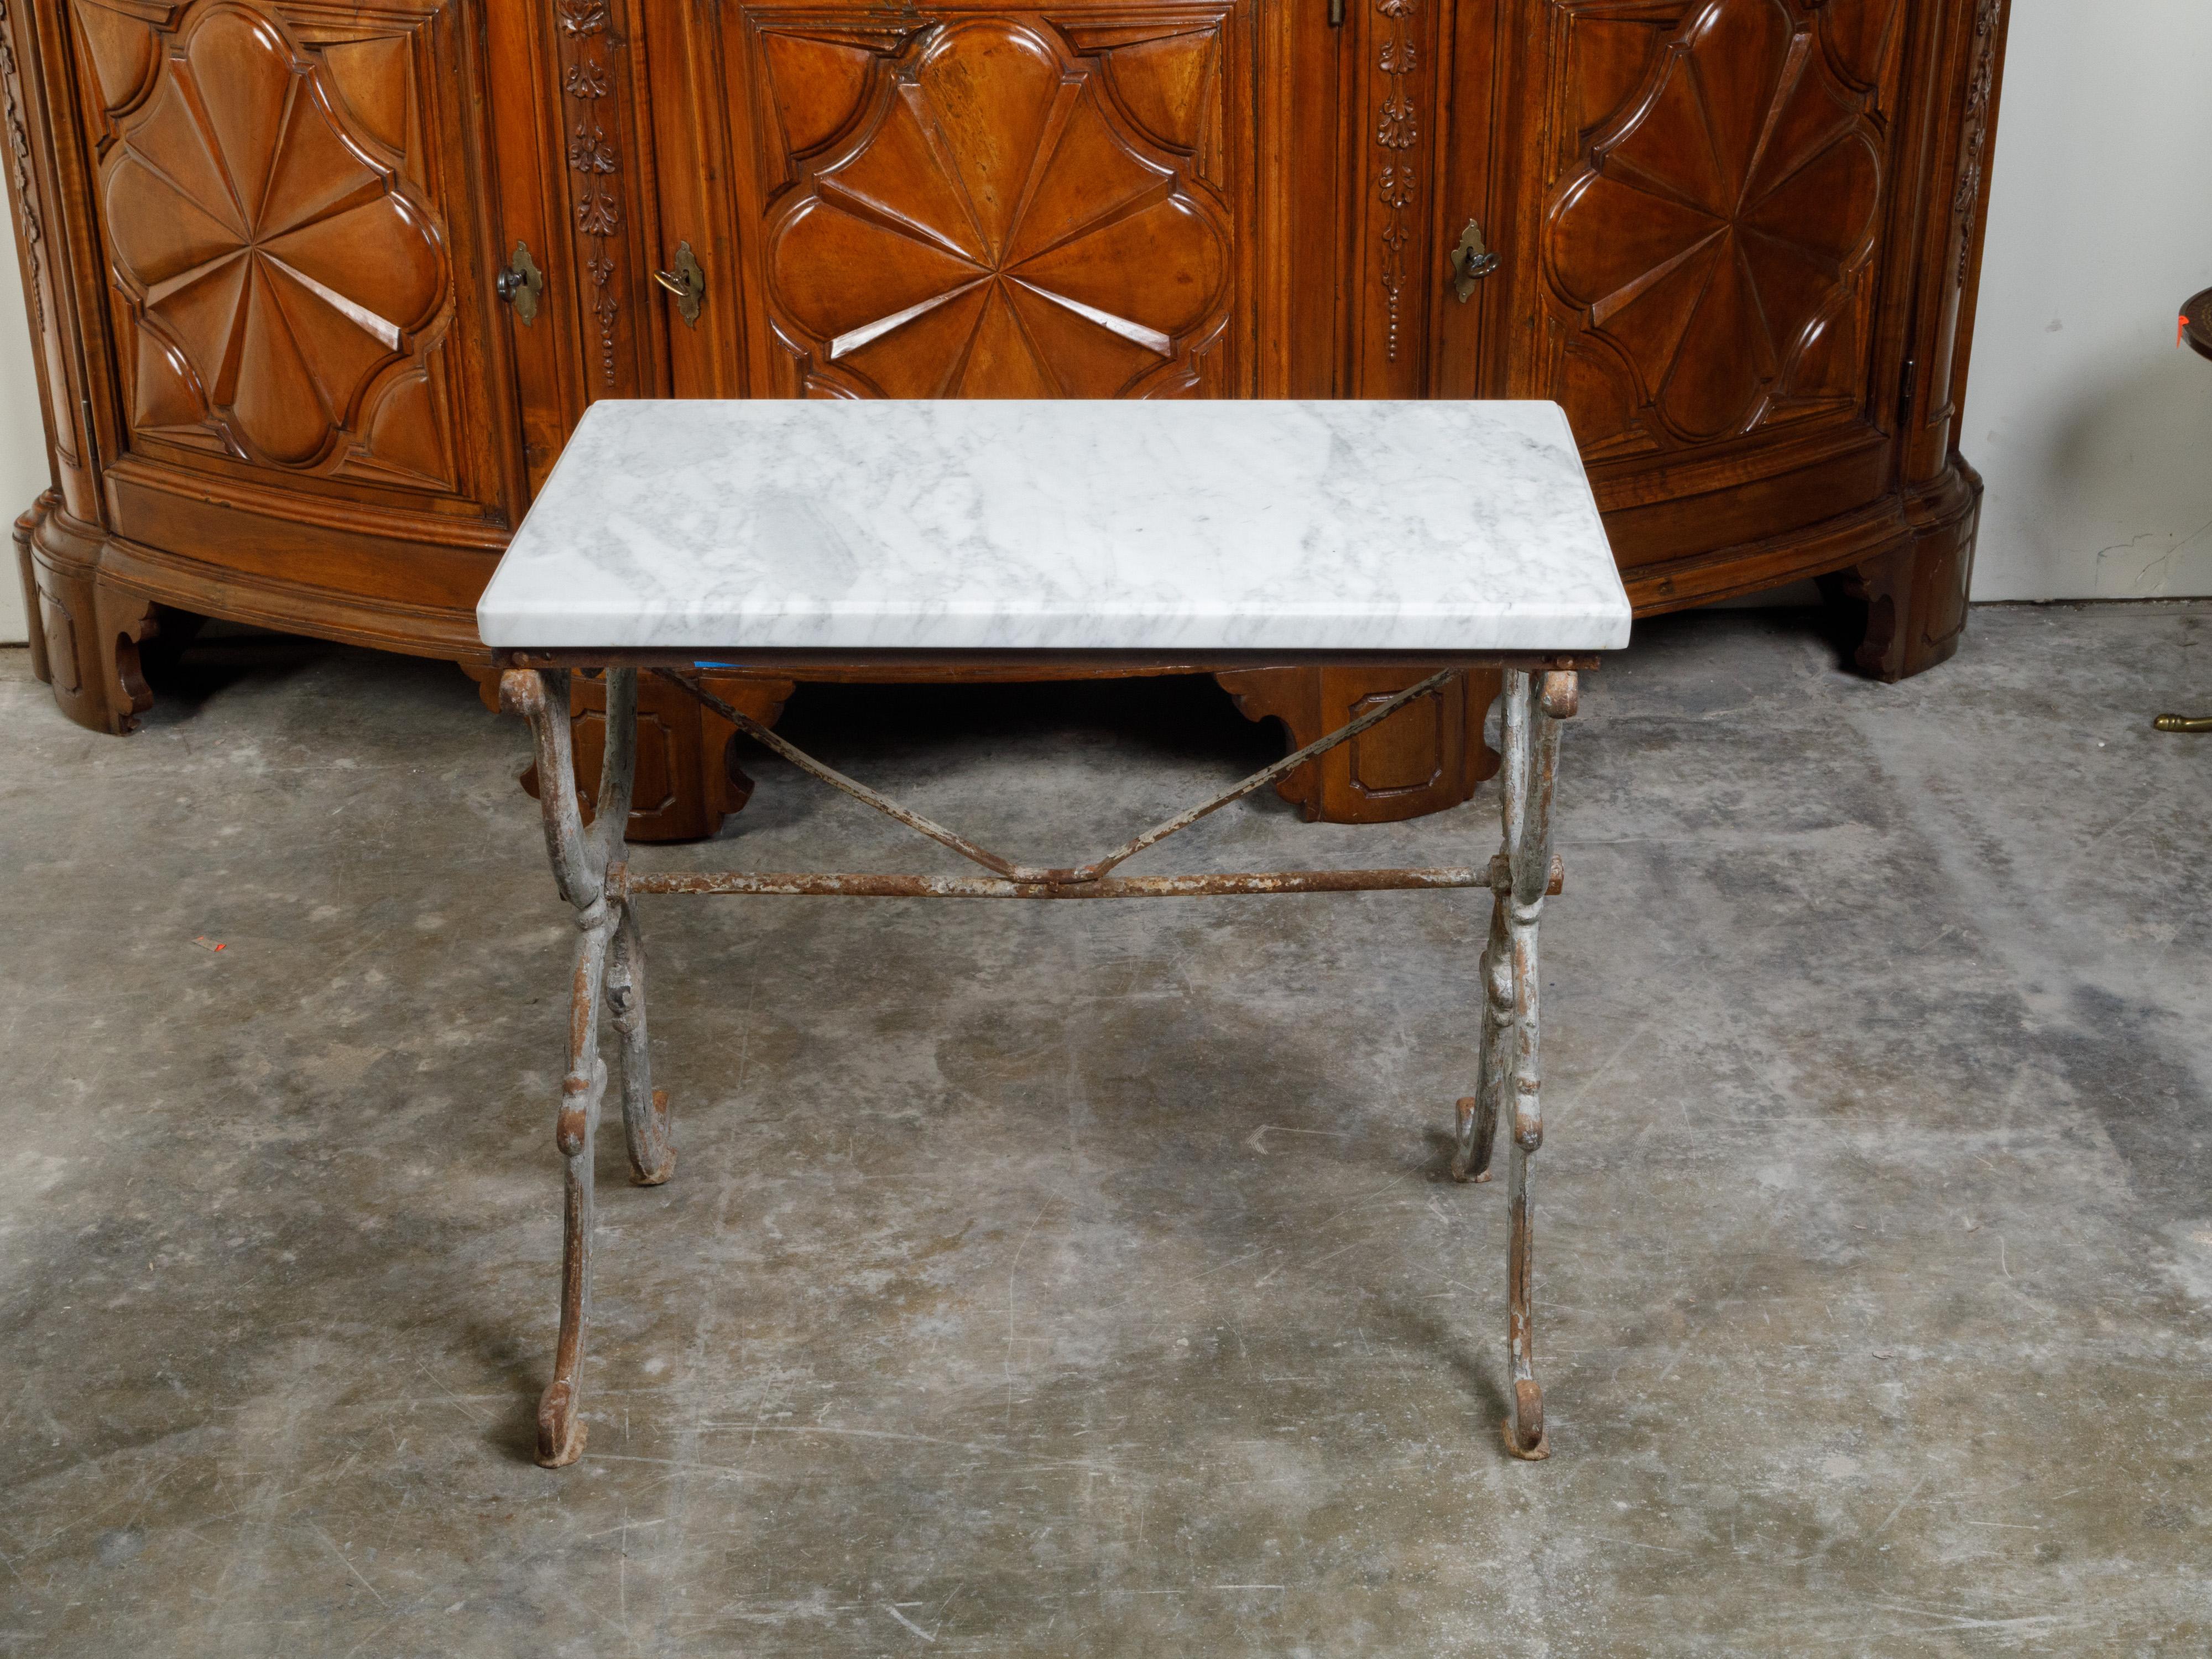 Une table console française en fer du XIXe siècle, avec un plateau en marbre blanc et une base en forme de X. Créée en France au cours du XIXe siècle, cette table console présente un plateau rectangulaire en marbre blanc assis au-dessus d'une